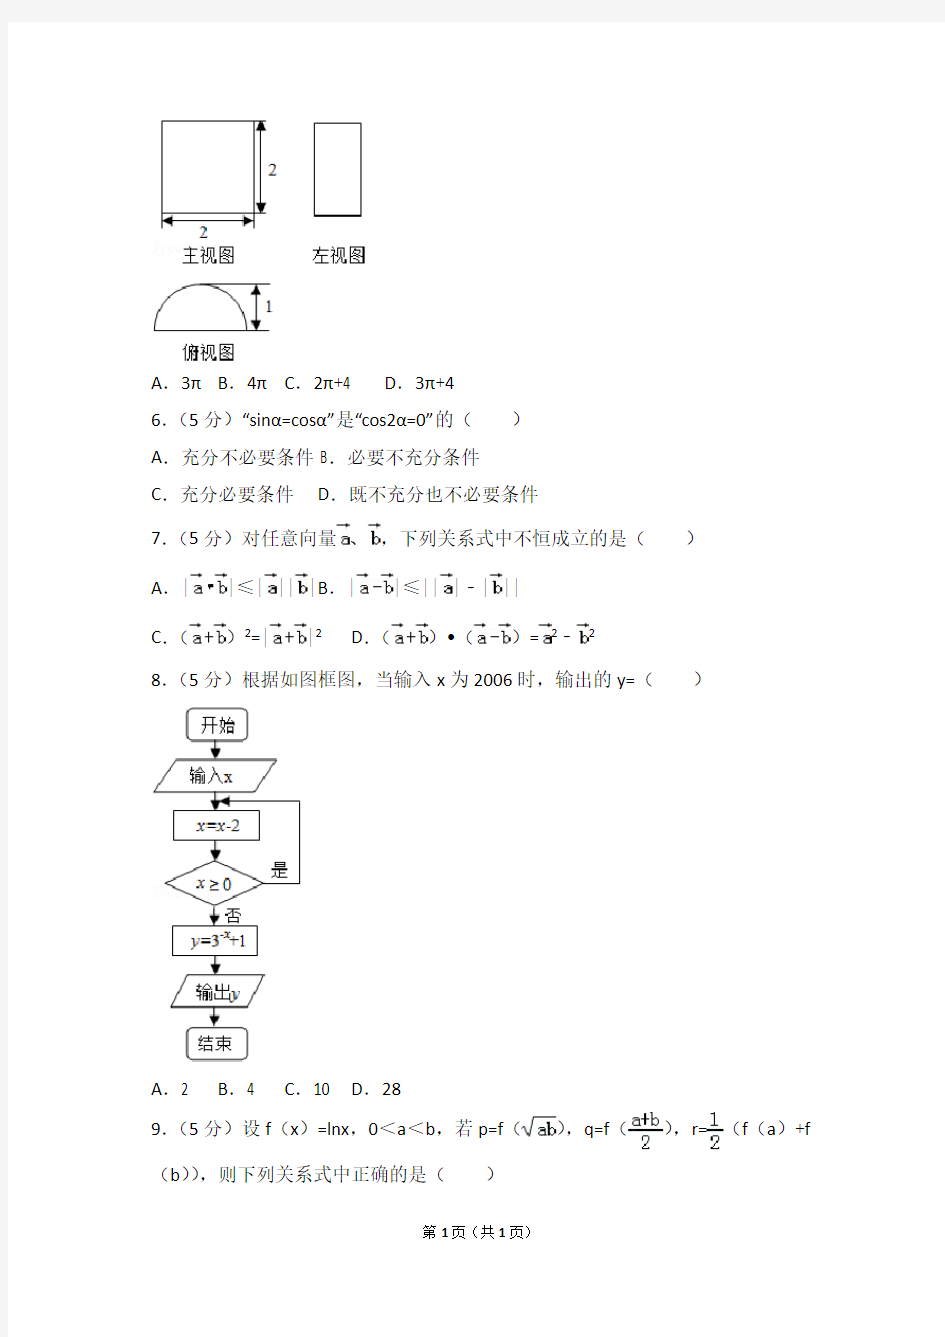 2015年陕西省高考数学试卷(理科)